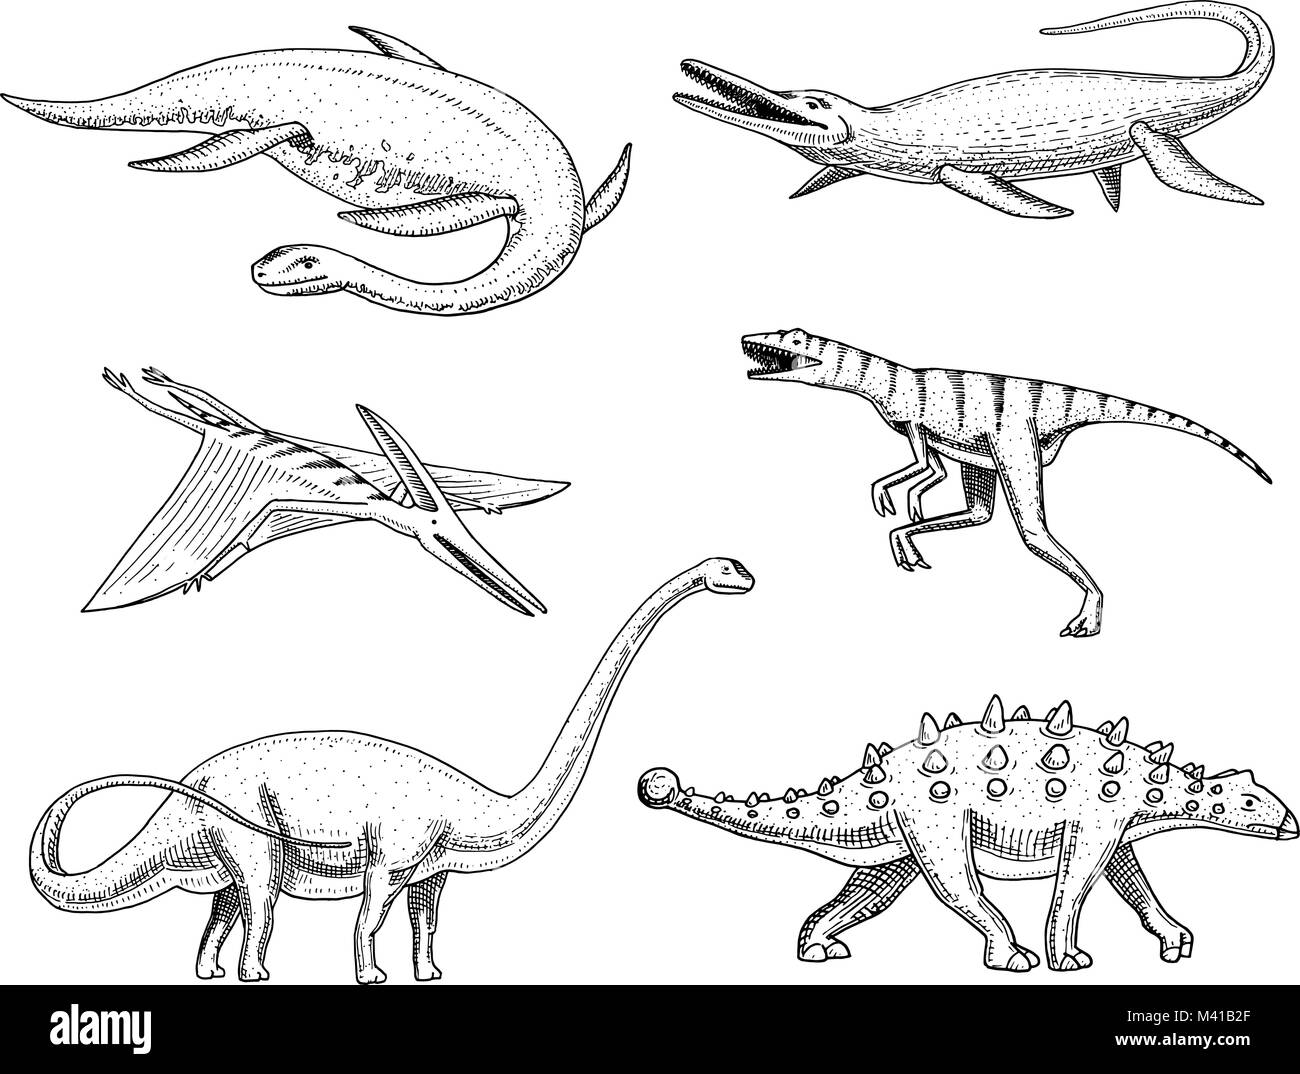 Dinosaurier Elasmosaurus, Mosasaurus, Barosaurus, Diplodocus, Pterosaur, Ankylosaurus, Velociraptor, Fossilien, winged Lizard. Amerikanische prähistorischen Reptilien, Jurassic Tier graviert Hand gezeichnet Vektor. Stock Vektor